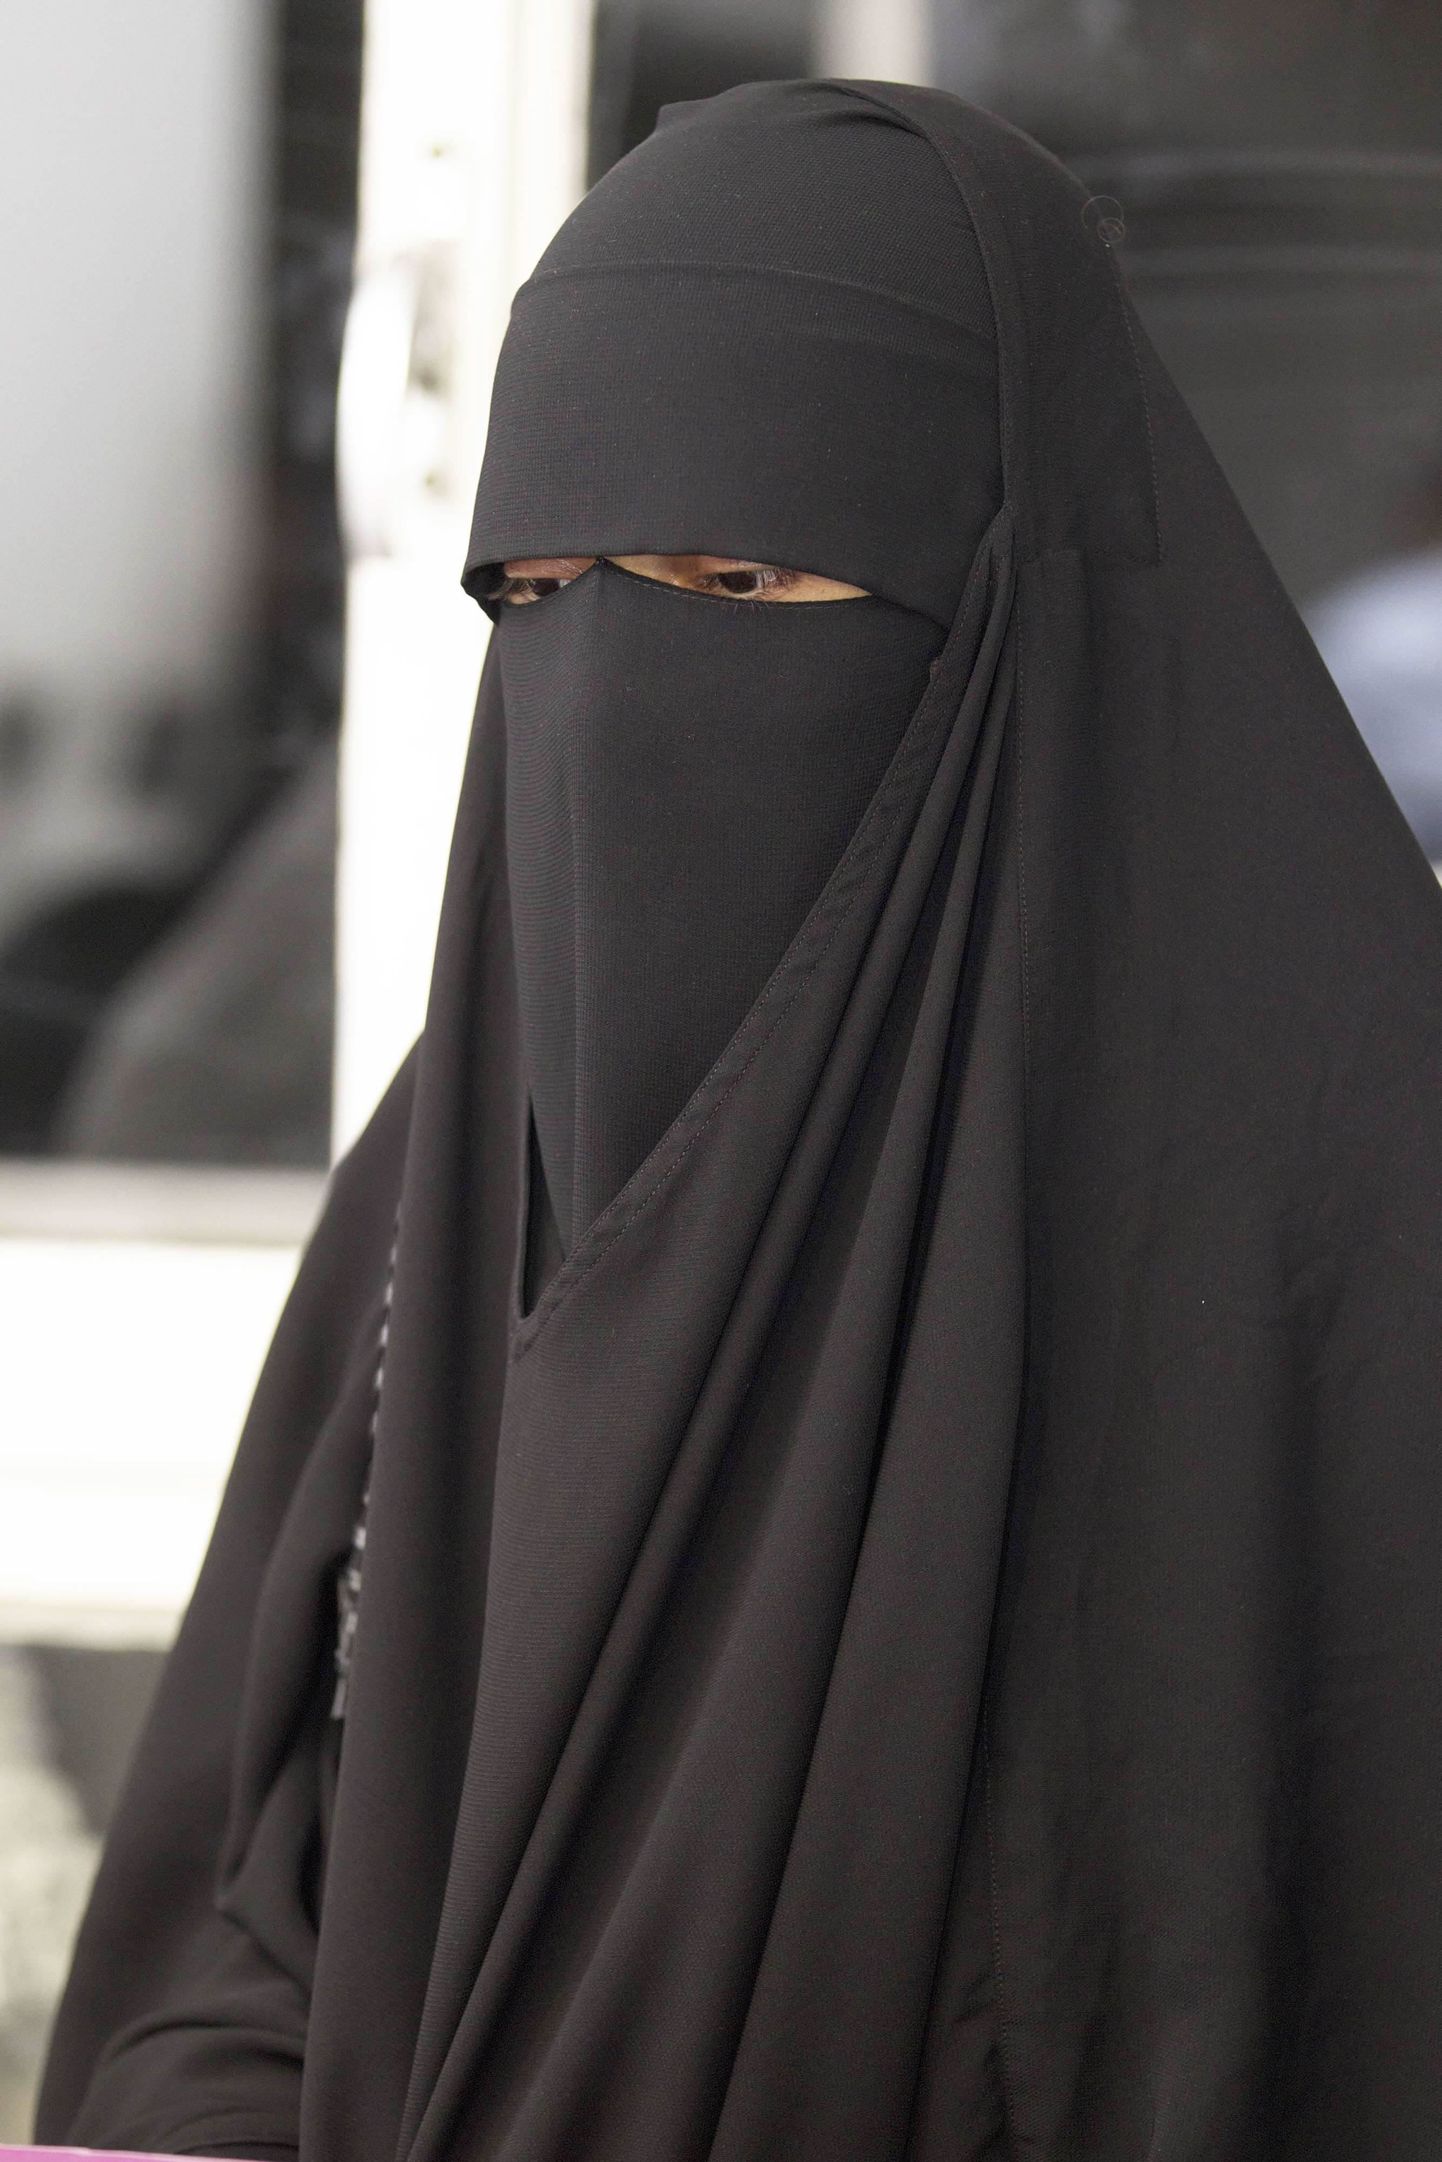 Naist ei lubatud lastevanemate koosolekule, kuna ta kandis niqabi